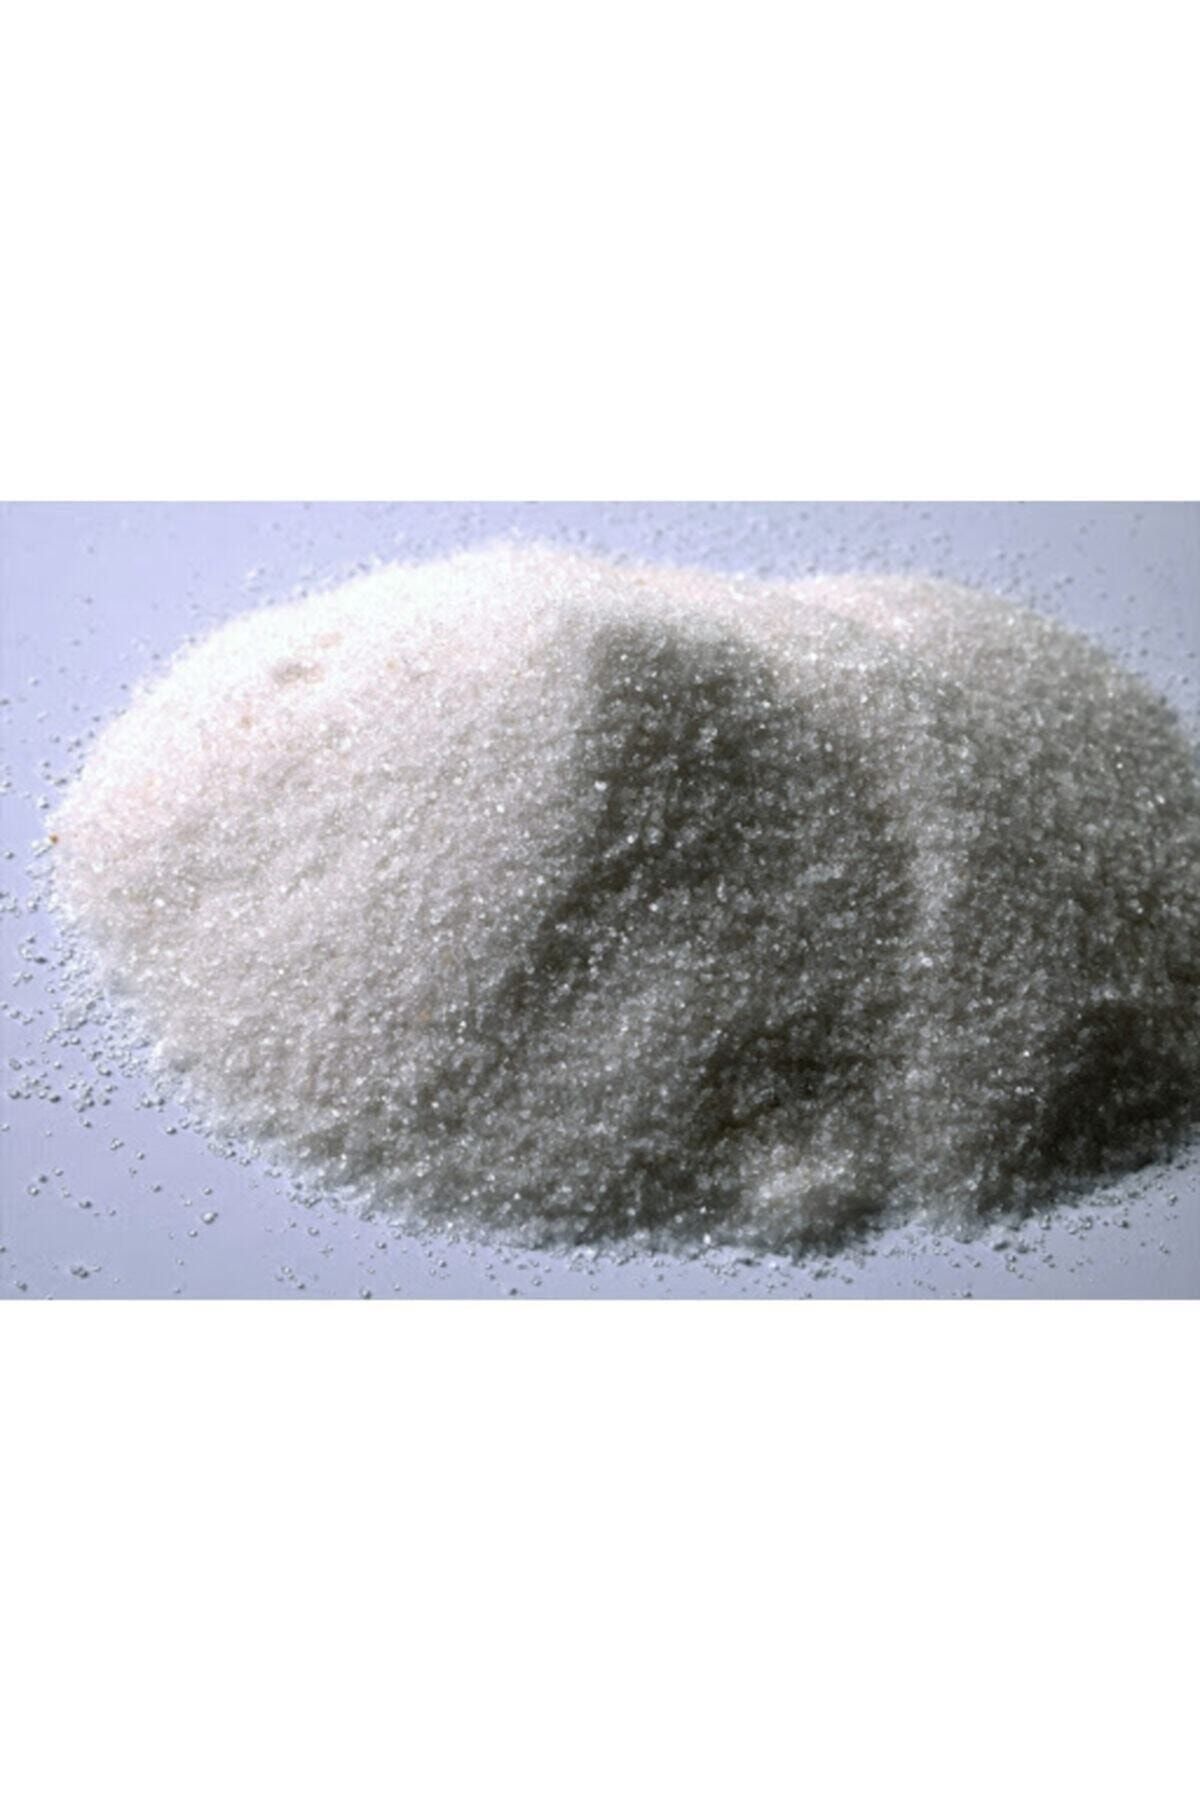 ÜNALLARTARIM 15 Kg %21 Amonyum Sülfat As Şeker Gübre Bitki Gübresi Çim Gübresi Şeker Gübre Bitki Canlandırır